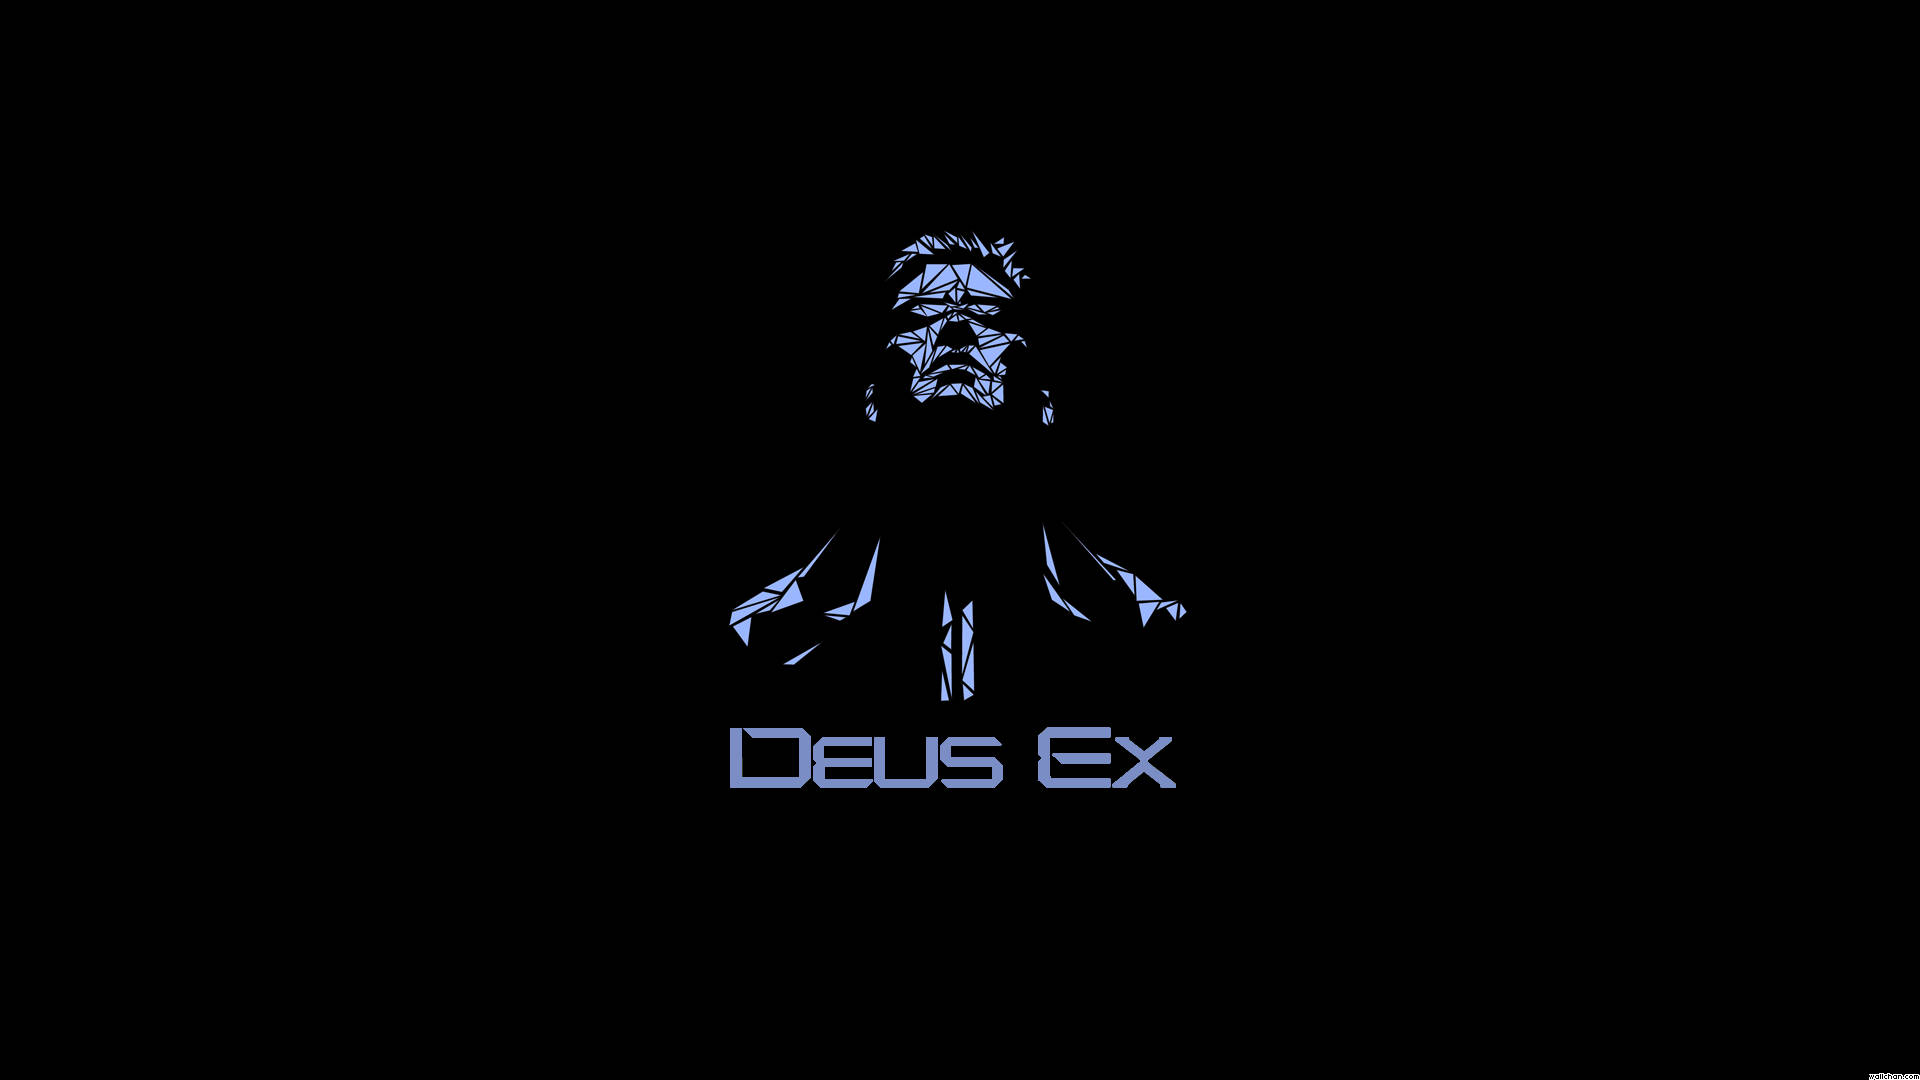 Deus Ex Background Wallpaper